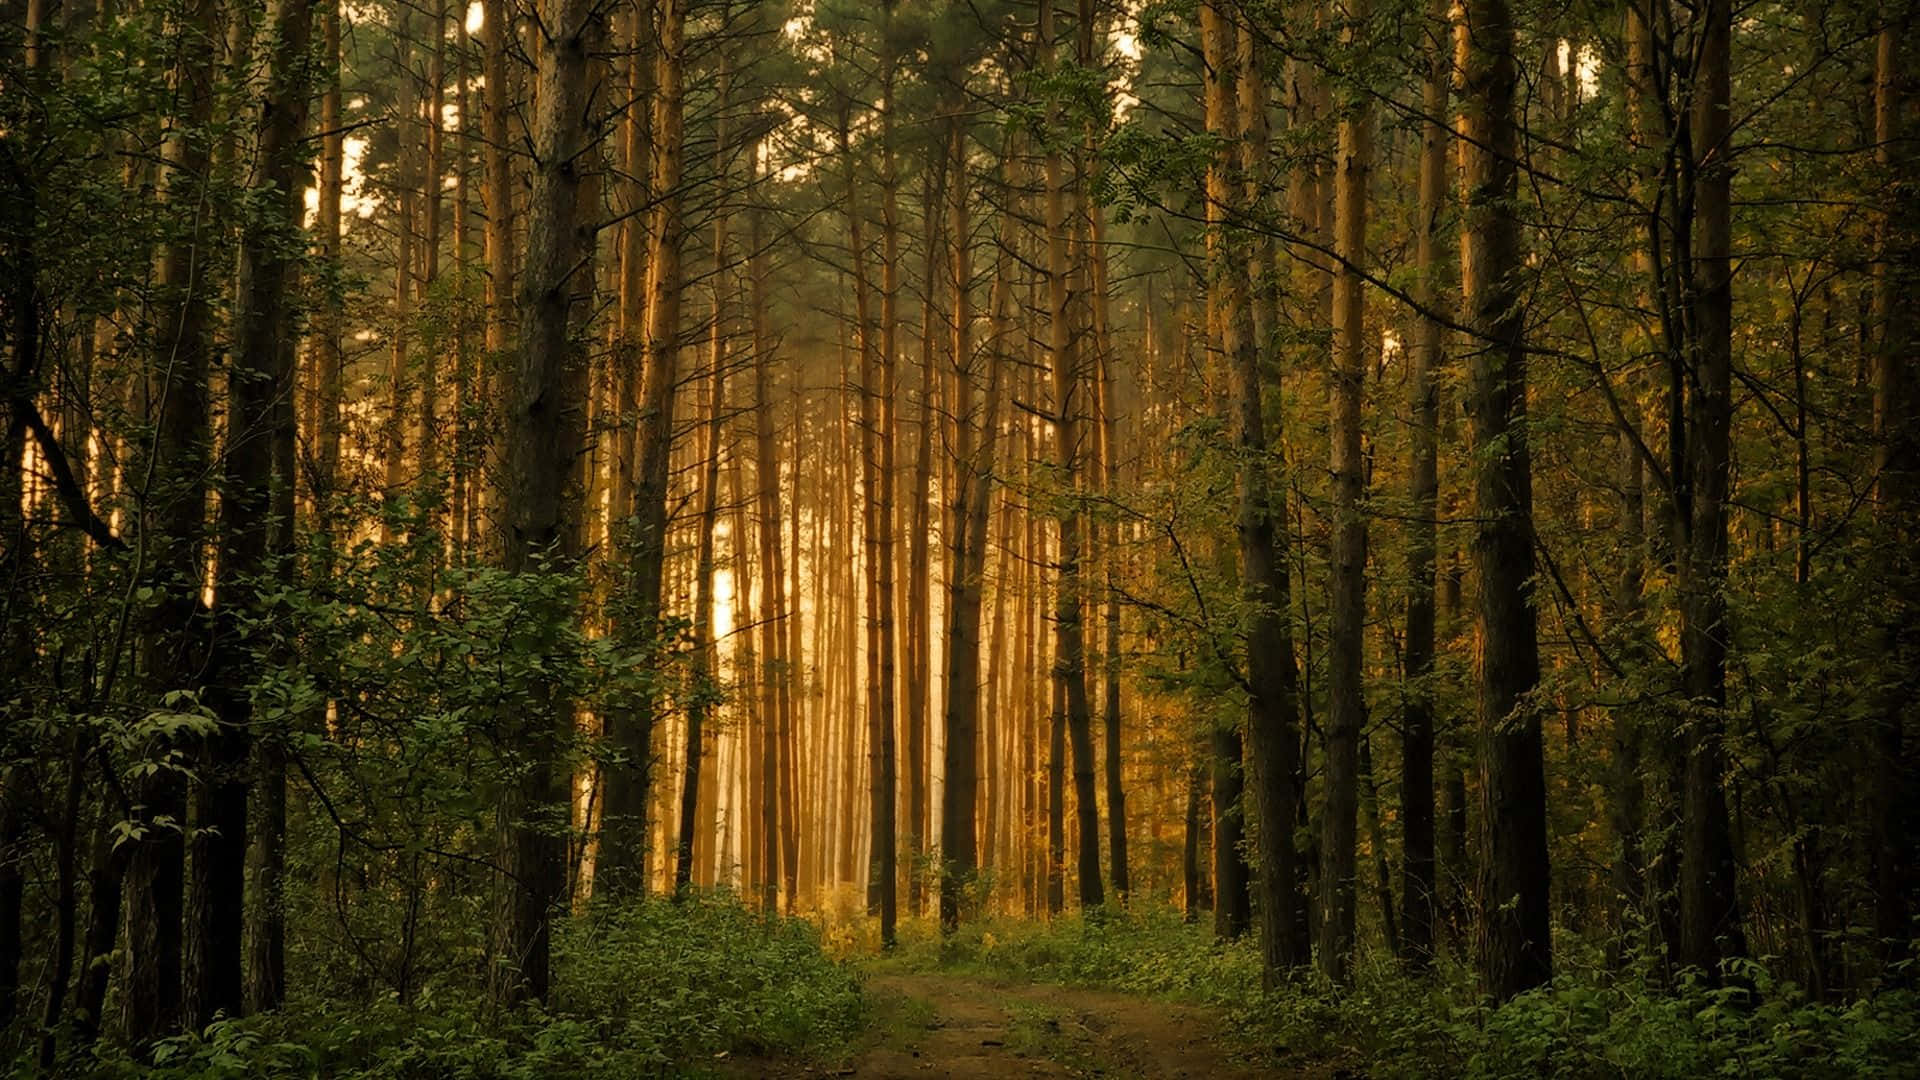 Uncamino De Tierra A Través De Un Bosque Con Árboles En El Fondo